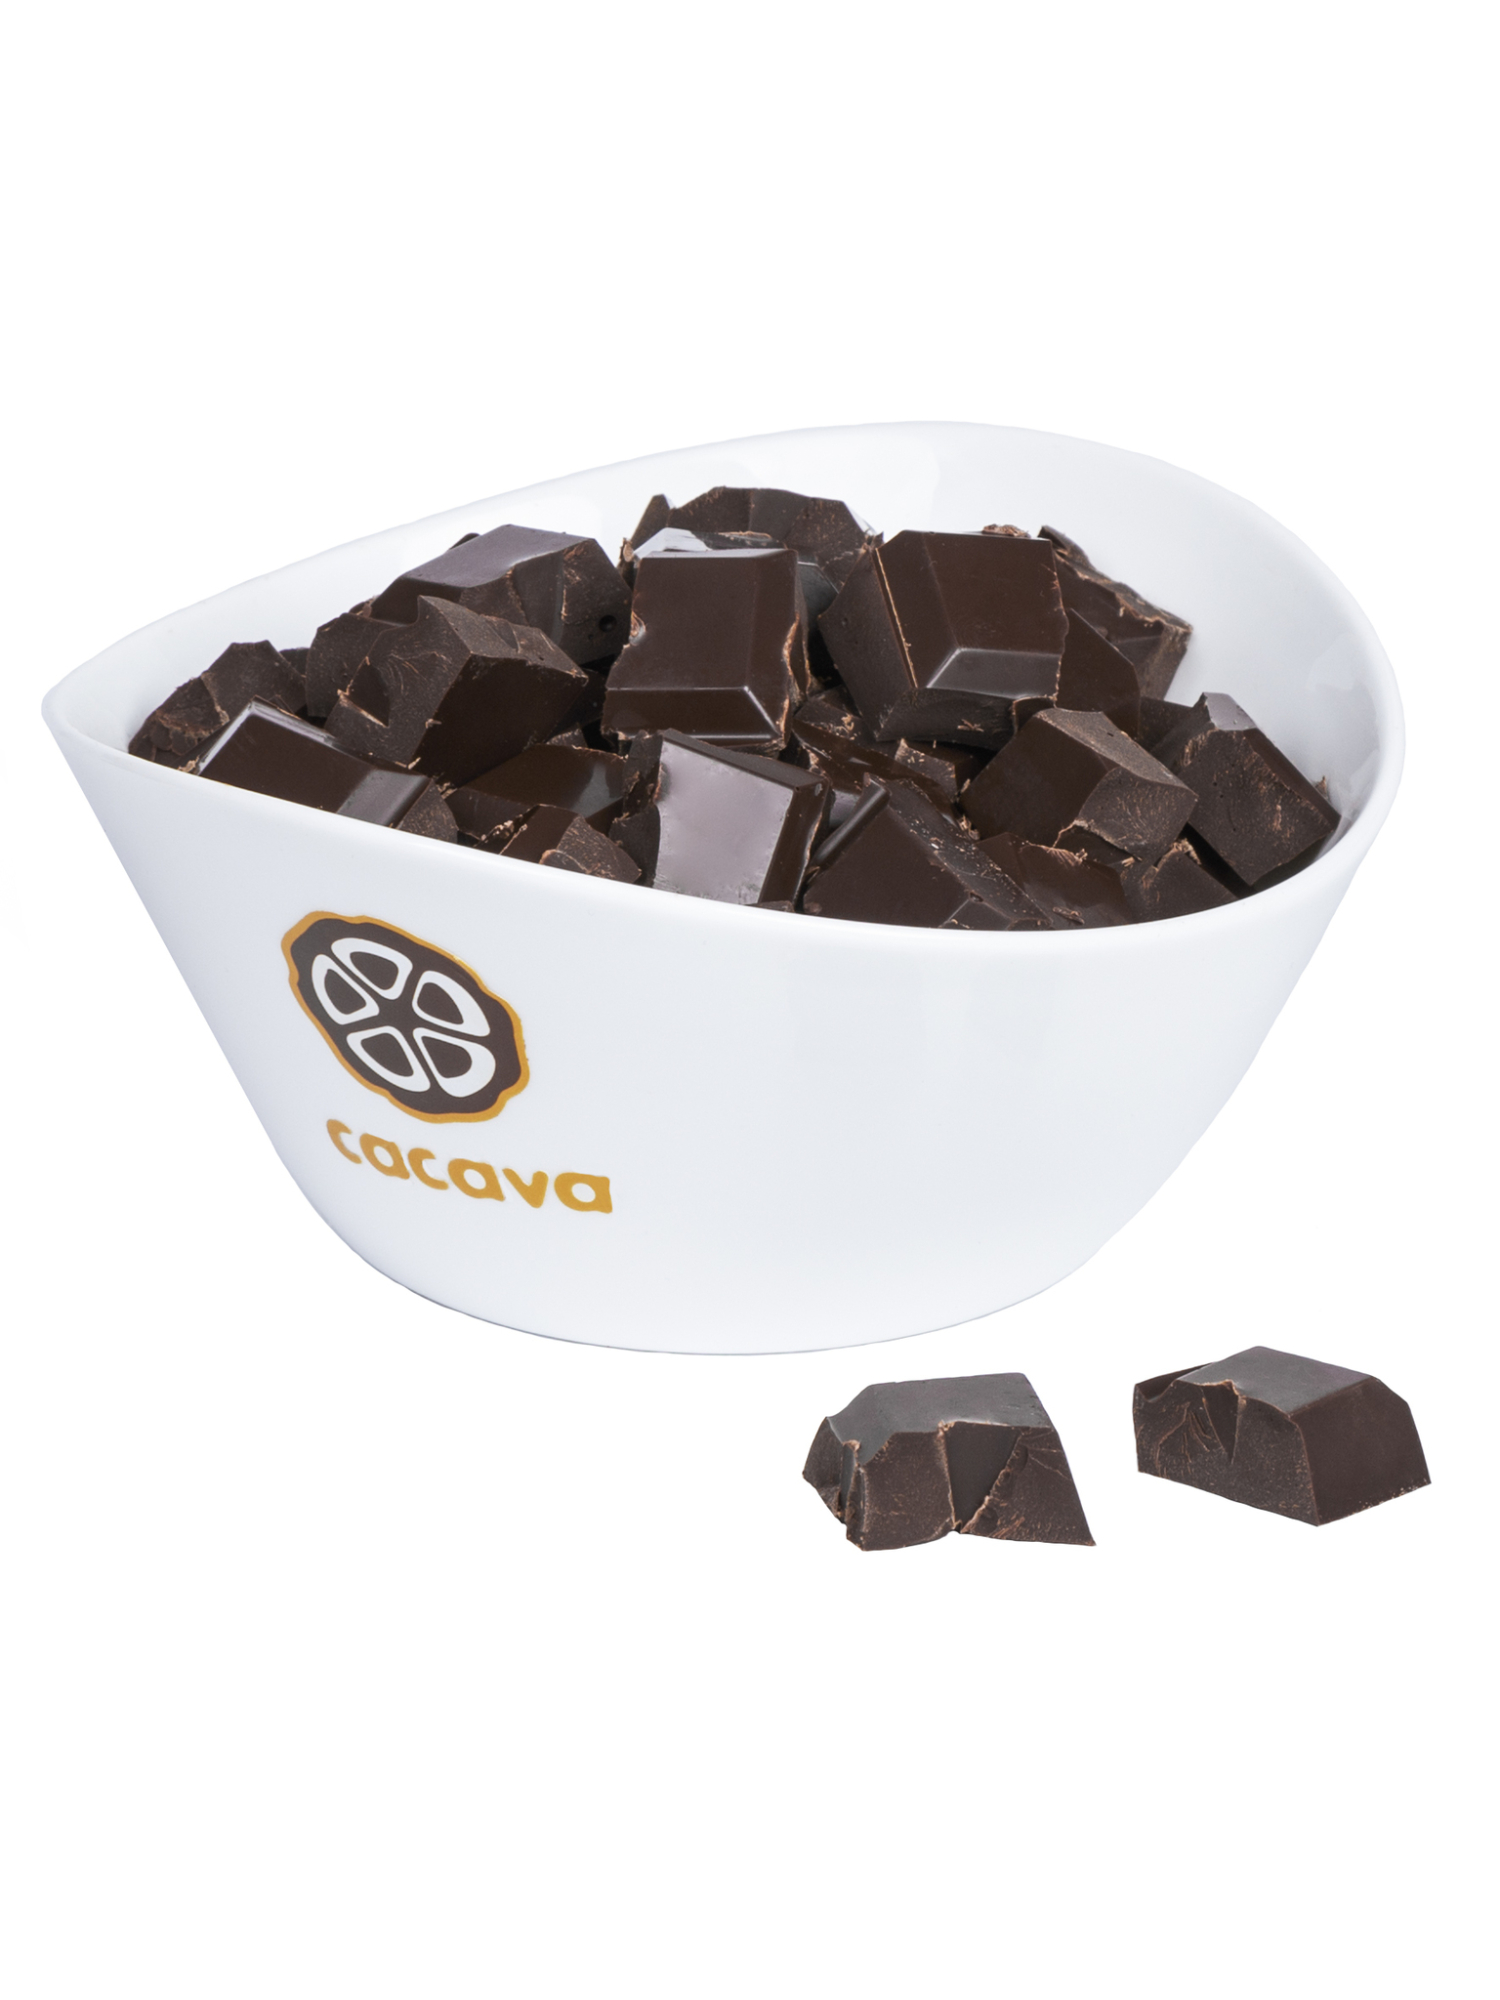 Тёмный шоколад 70 % какао (Индонезия, WEST PAPUA,Ransiki), 100г купить